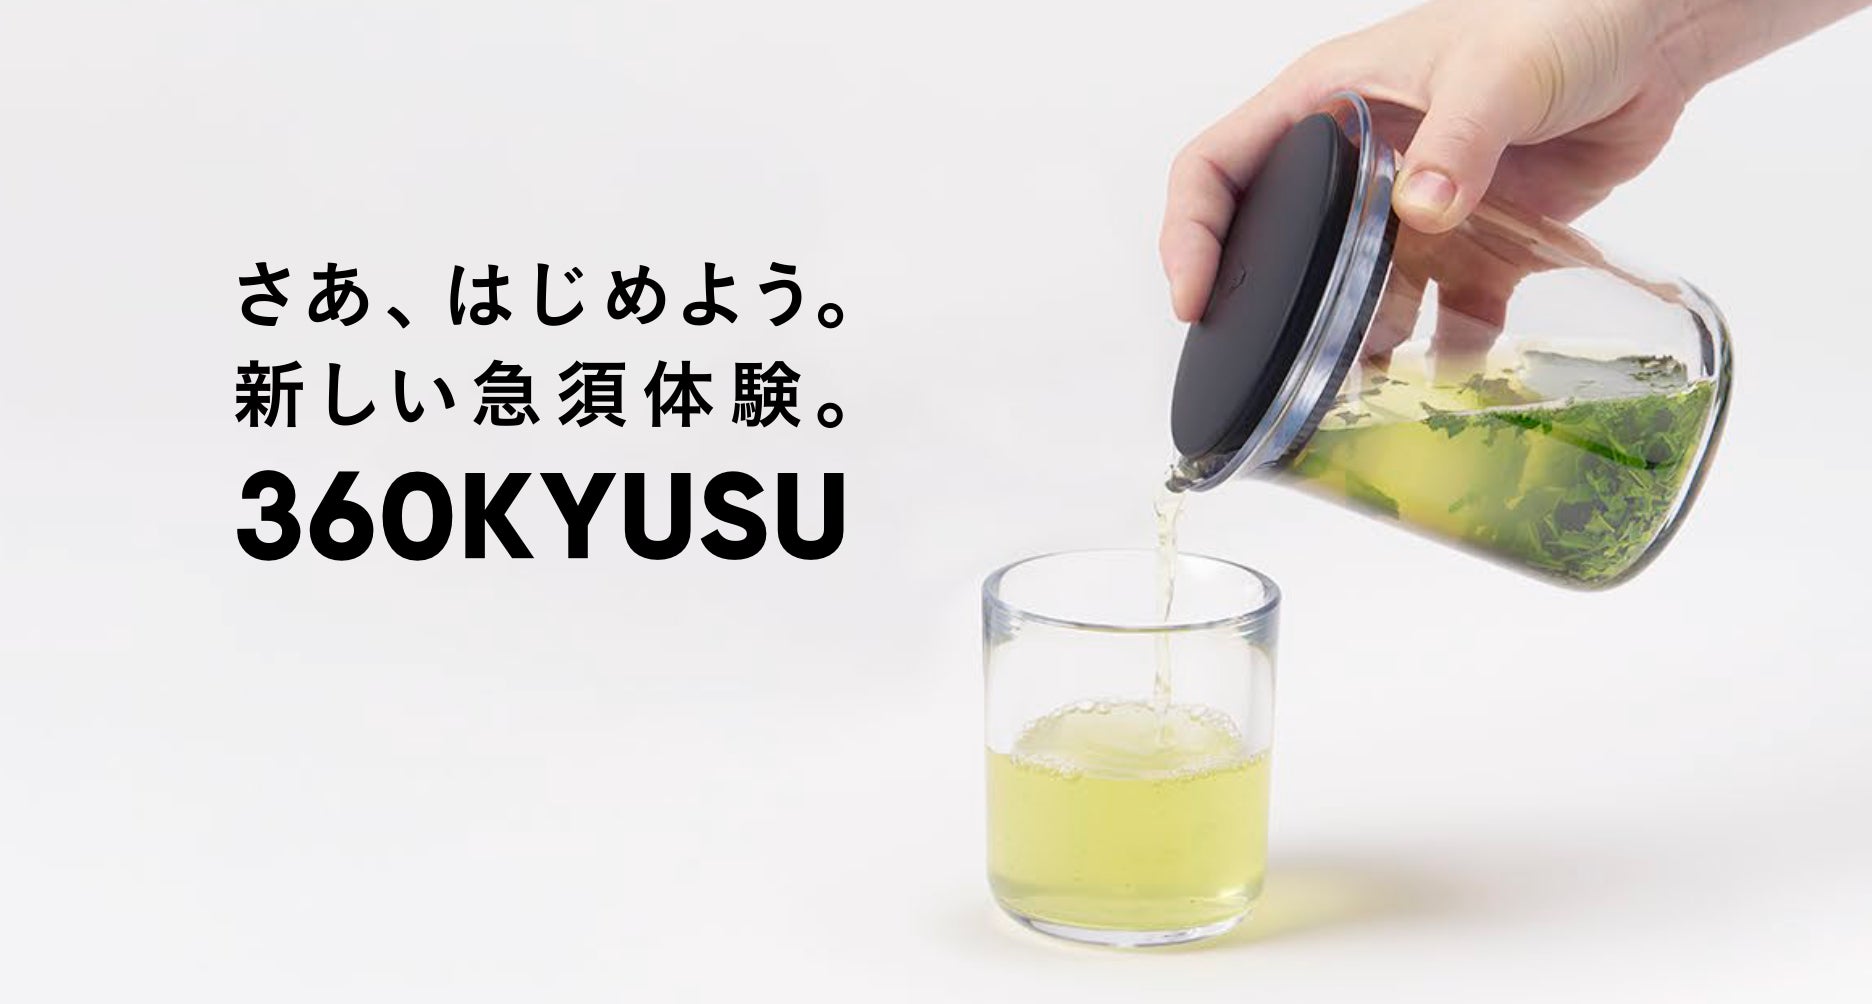 日本酒ブランド「ICHI-GO-CAN®」×JR東日本グループで地域共創！福島秋観光キャンペーンに合わせて「東北新幹線E5系」と「フルーティアふくしま」をデザインした福島の銘酒を限定販売